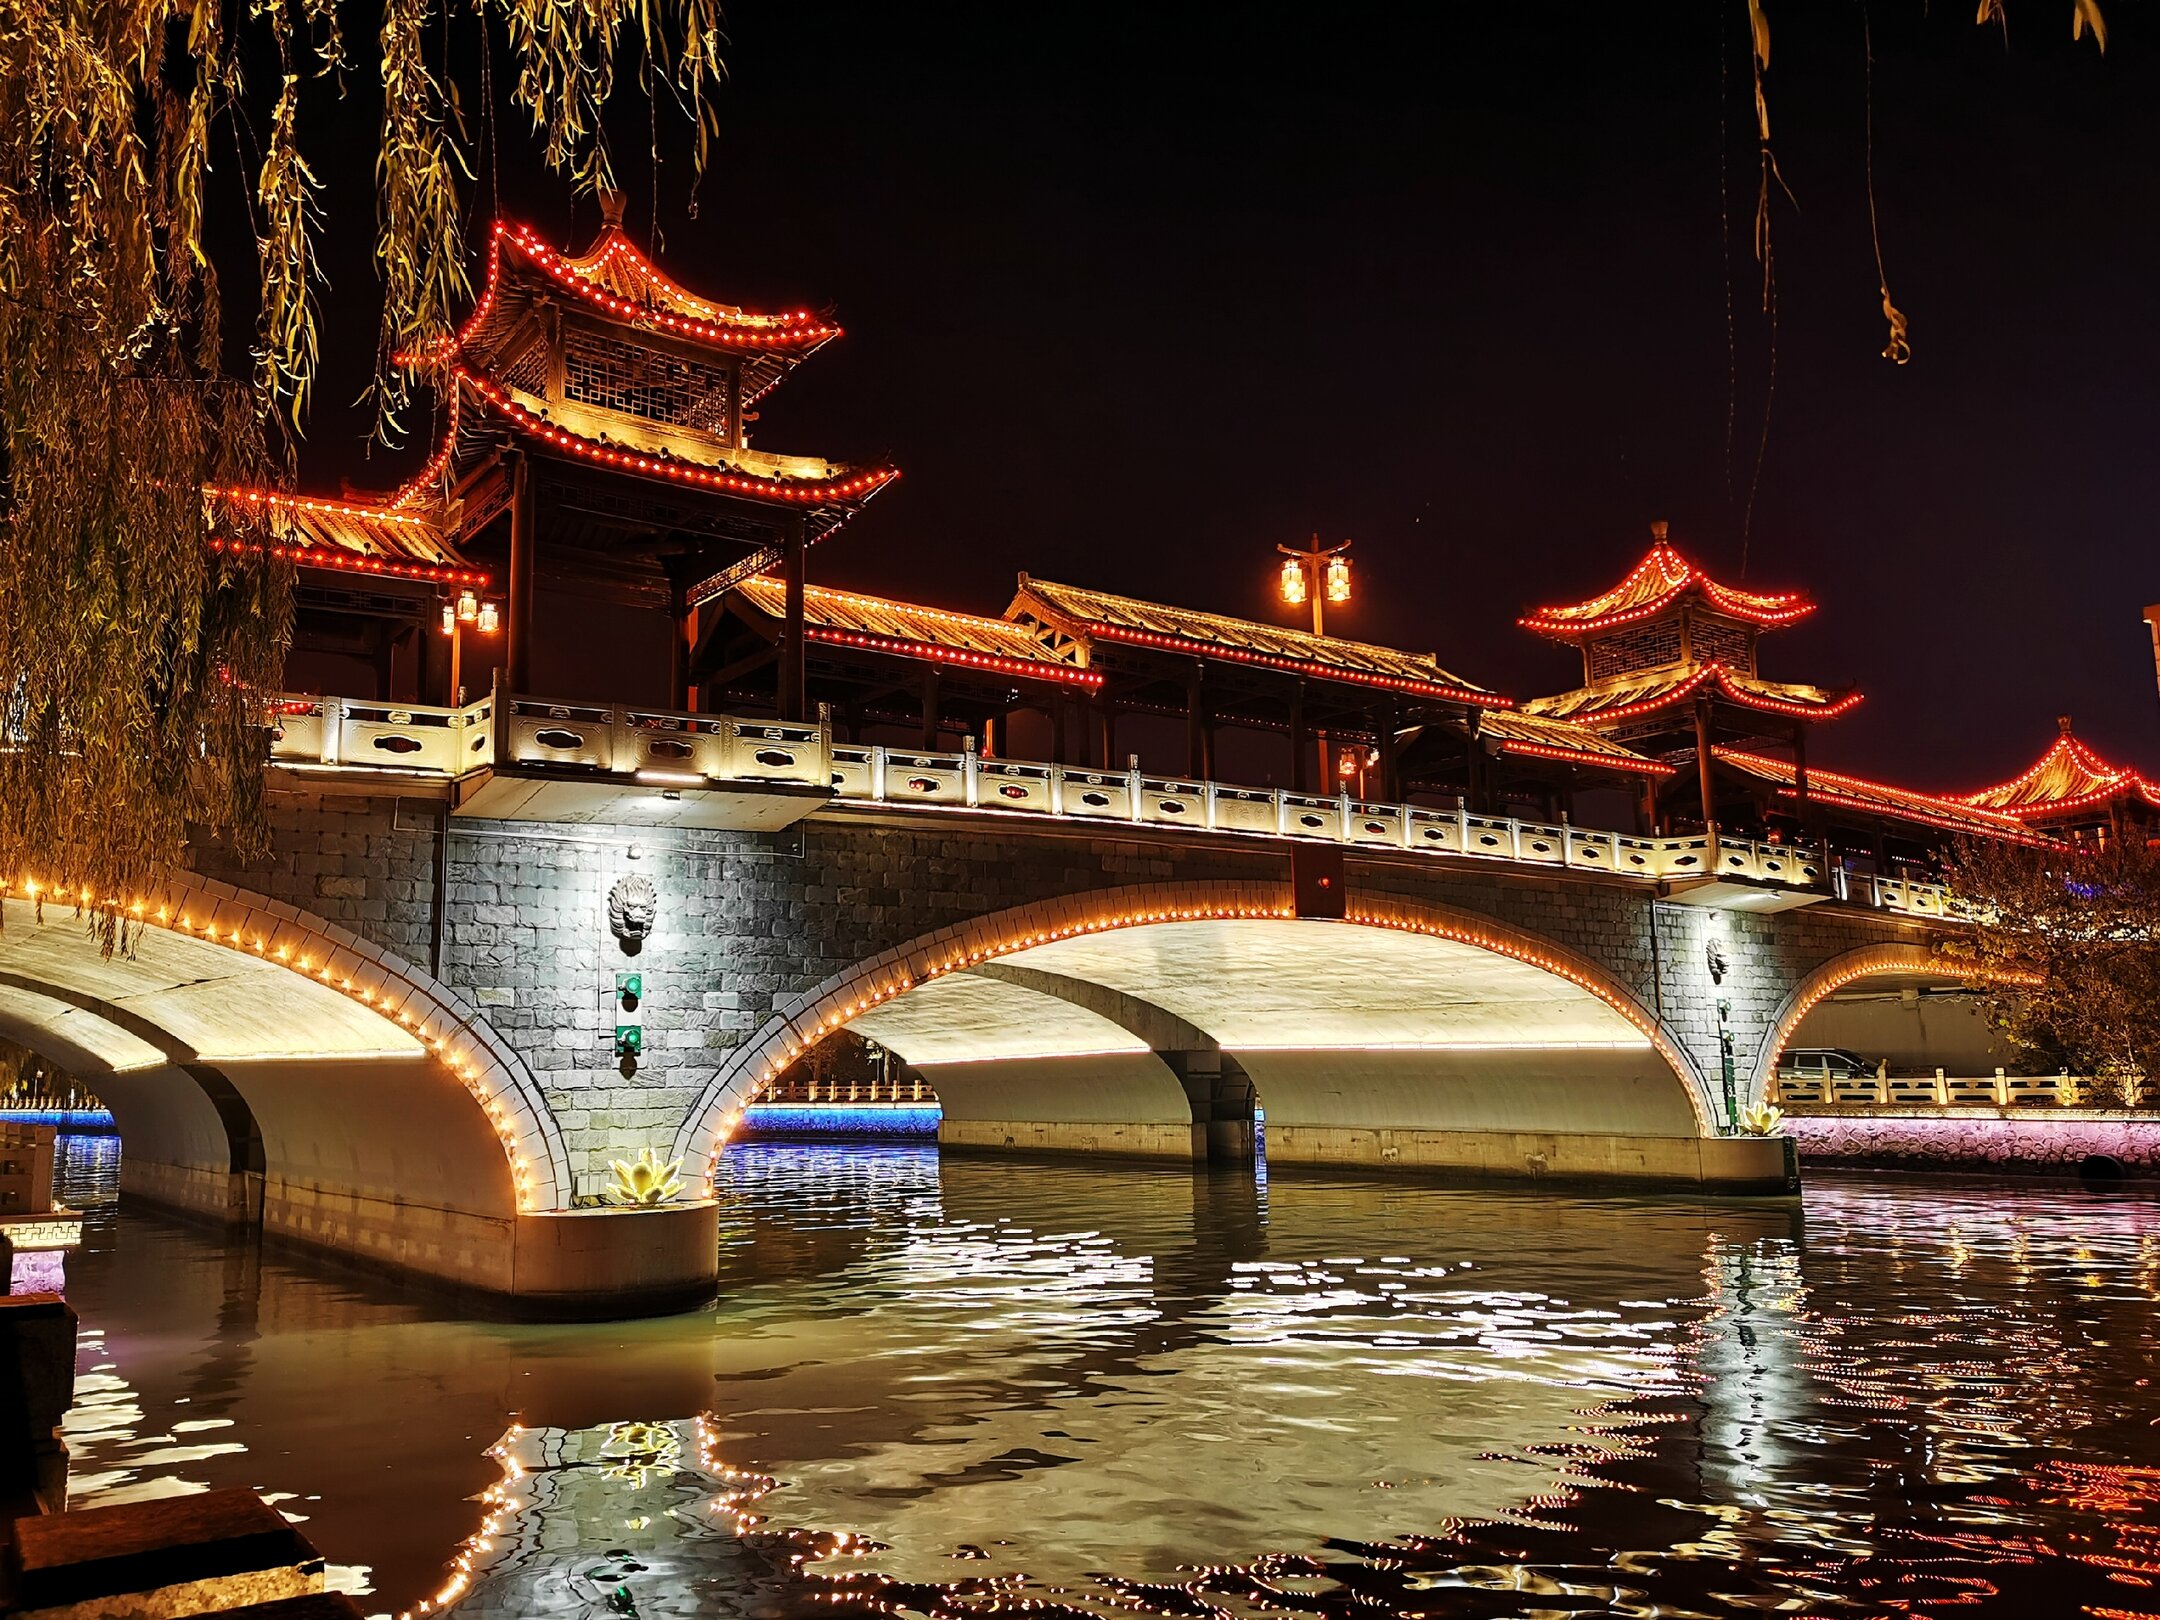 古运河穿扬州城而过,美丽夜景,常常吸引我前往欣赏,把它收入镜头